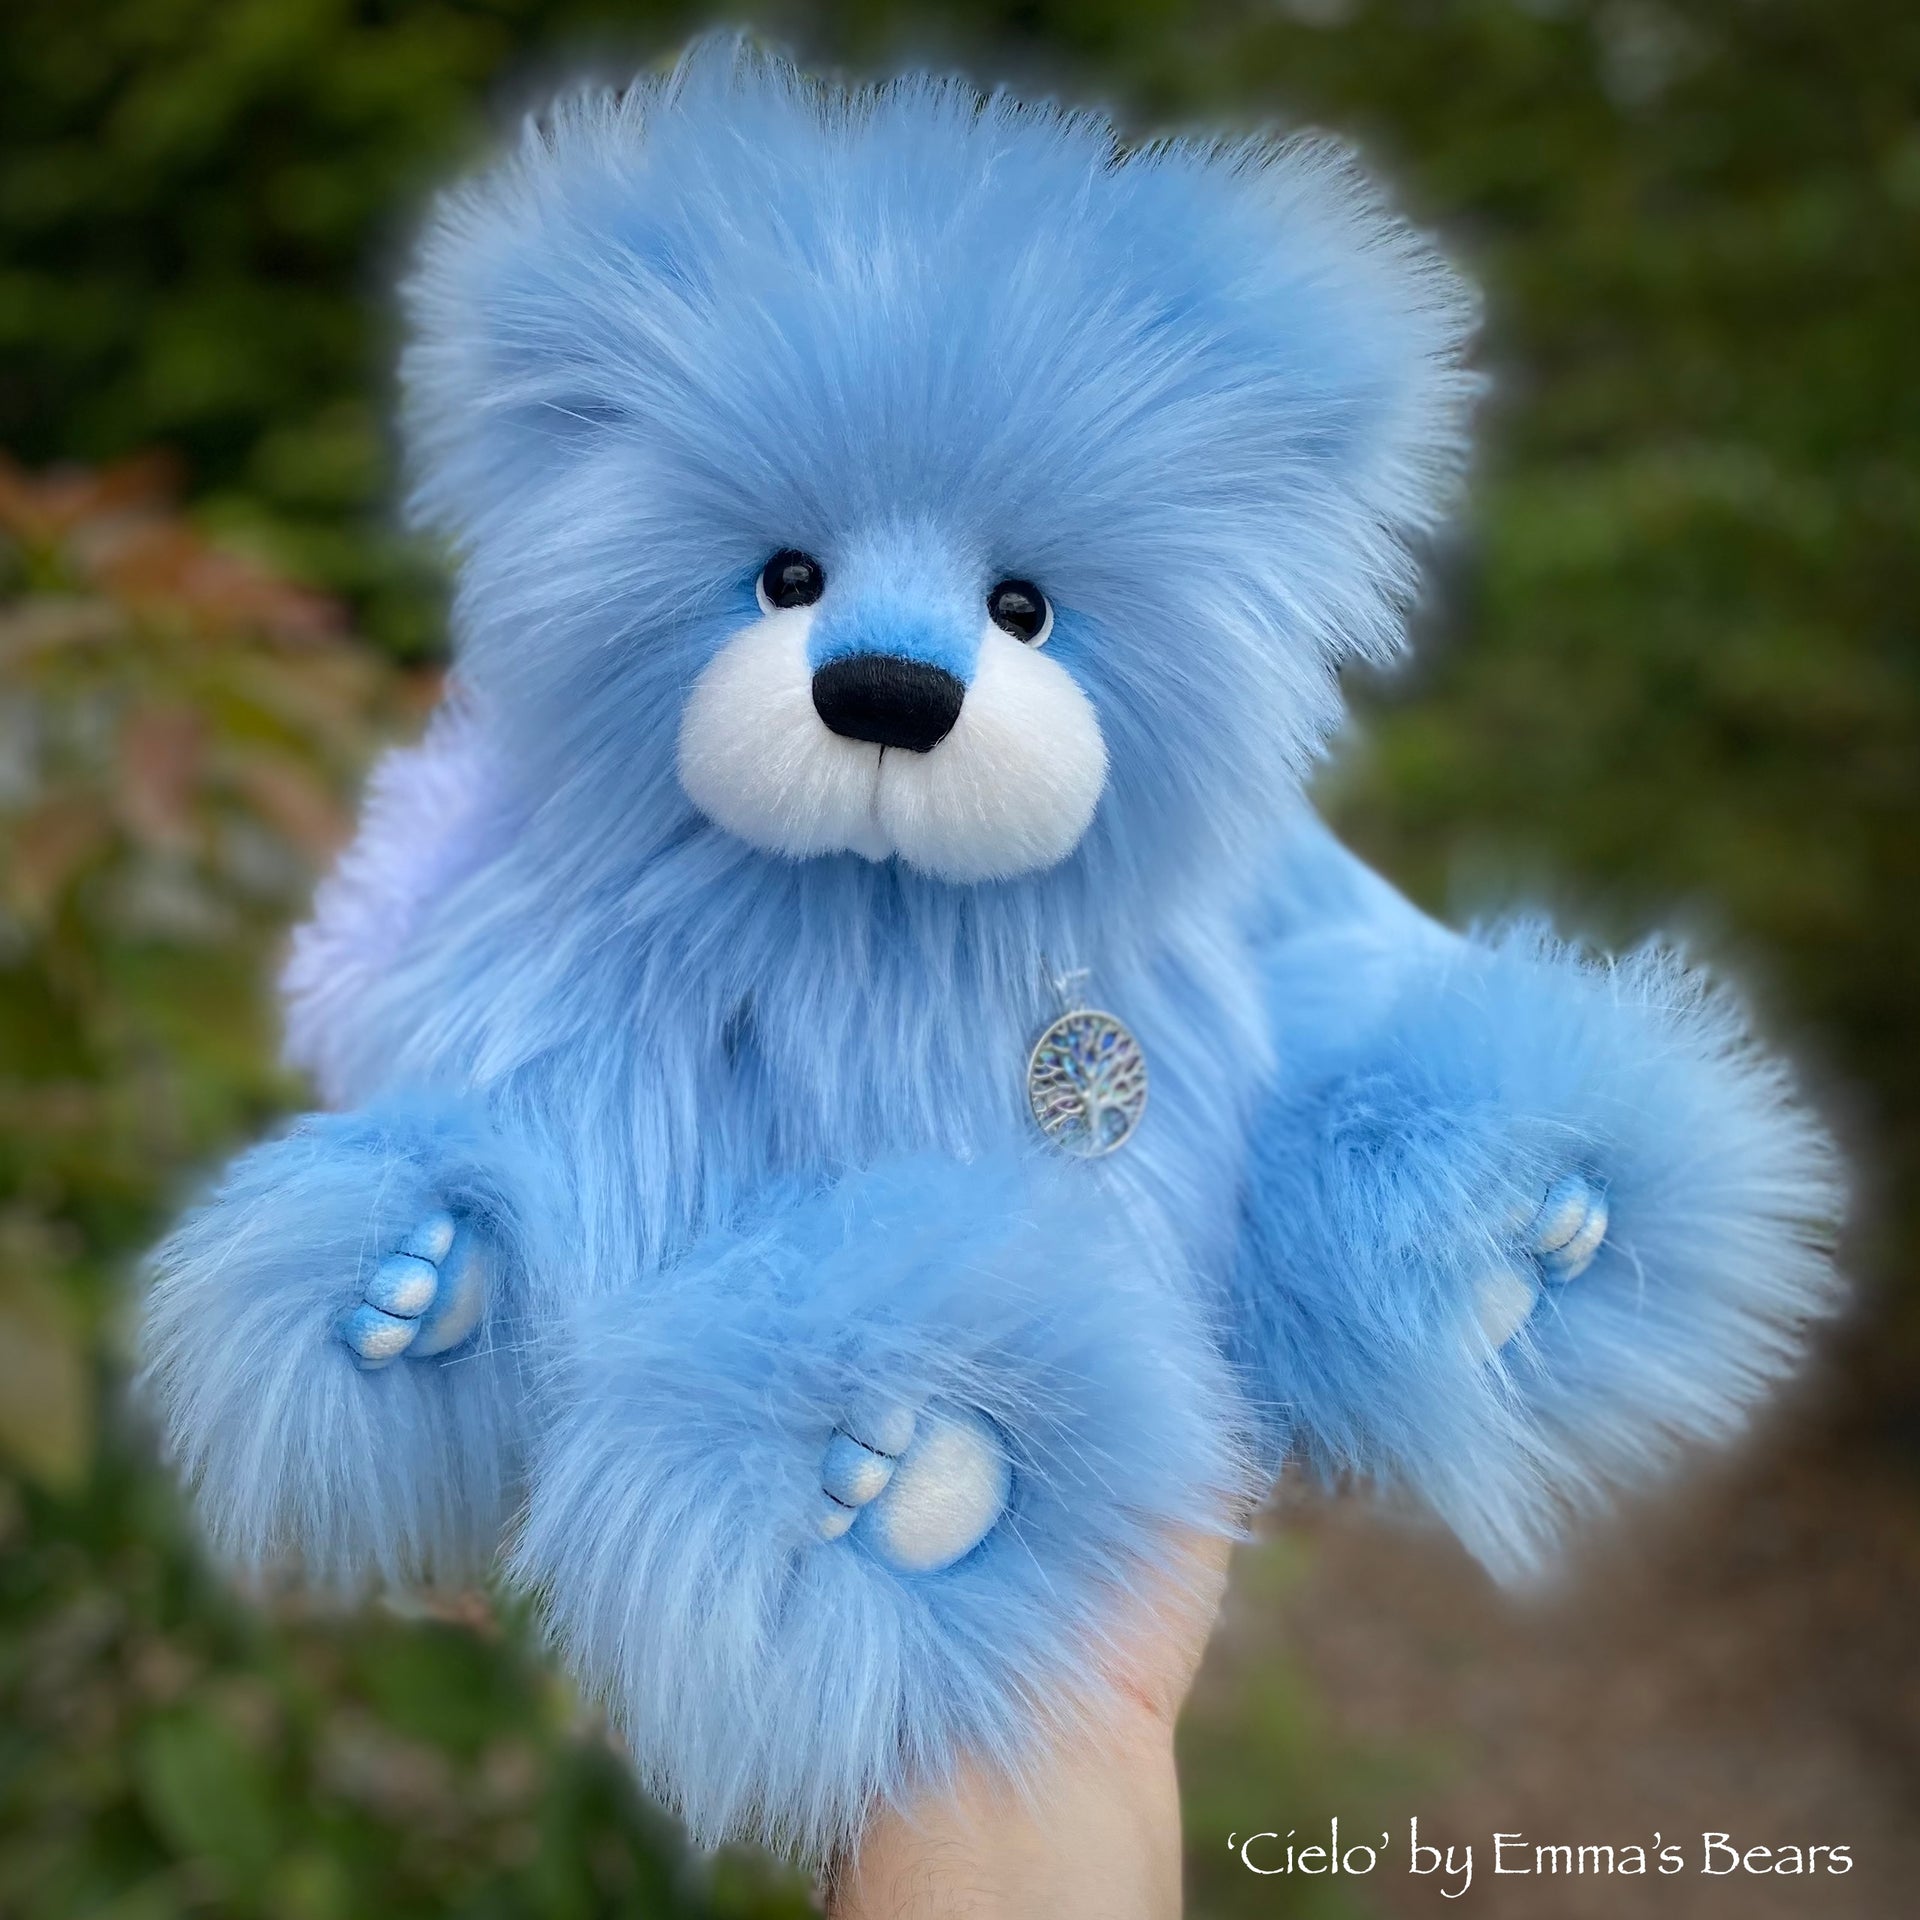 Cielo - 15" faux fur bear by Emmas Bears - OOAK